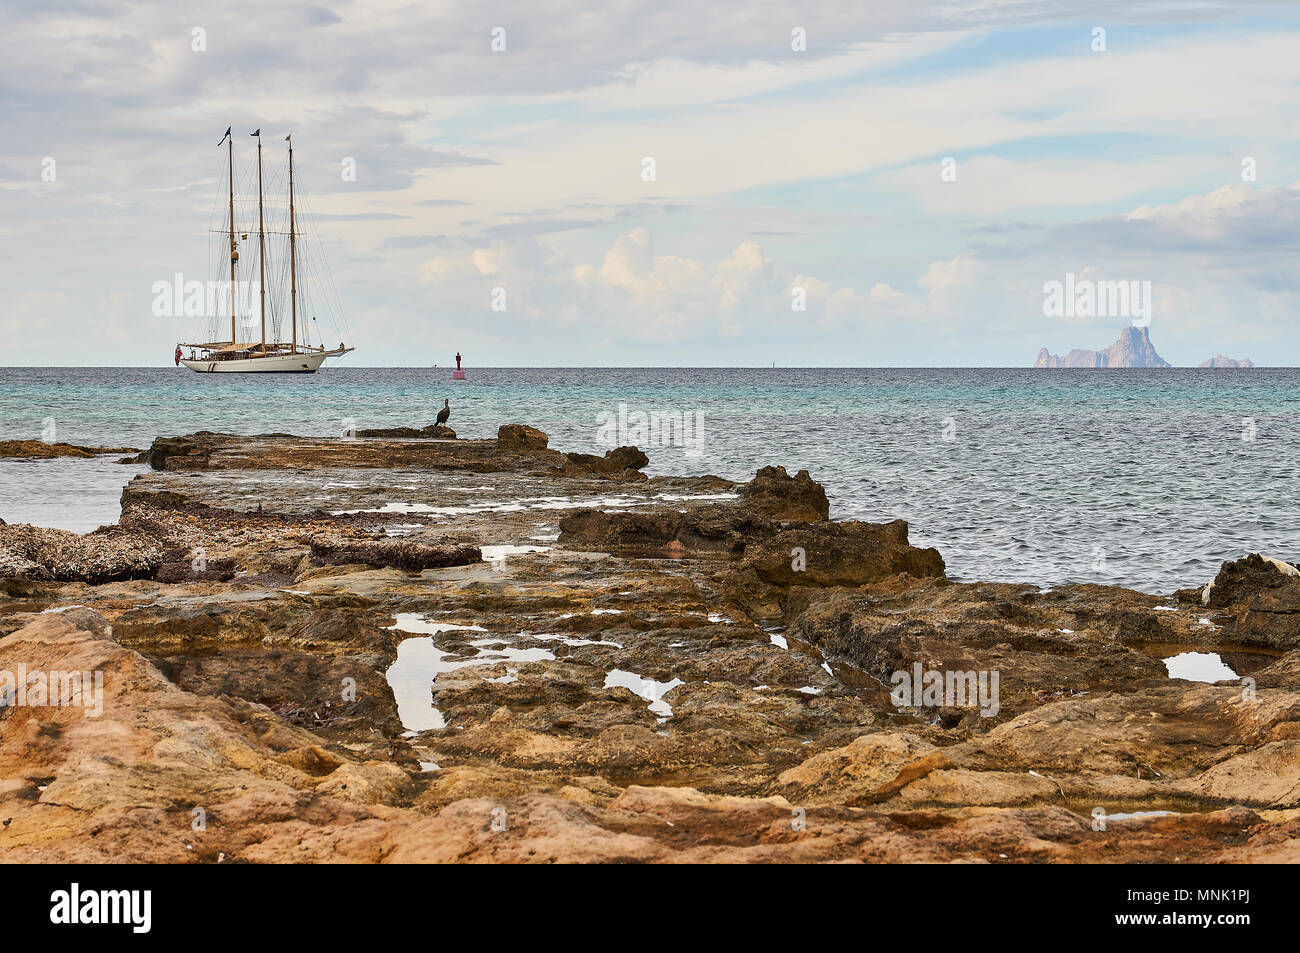 Einen verankerten klassische Segelboot mit roter Fahne Flagge mit einer europäischen Shag (Phalacrocorax aristotelis) Es Vedrá Inselchen (Formentera, Balearen, Spanien) Stockfoto